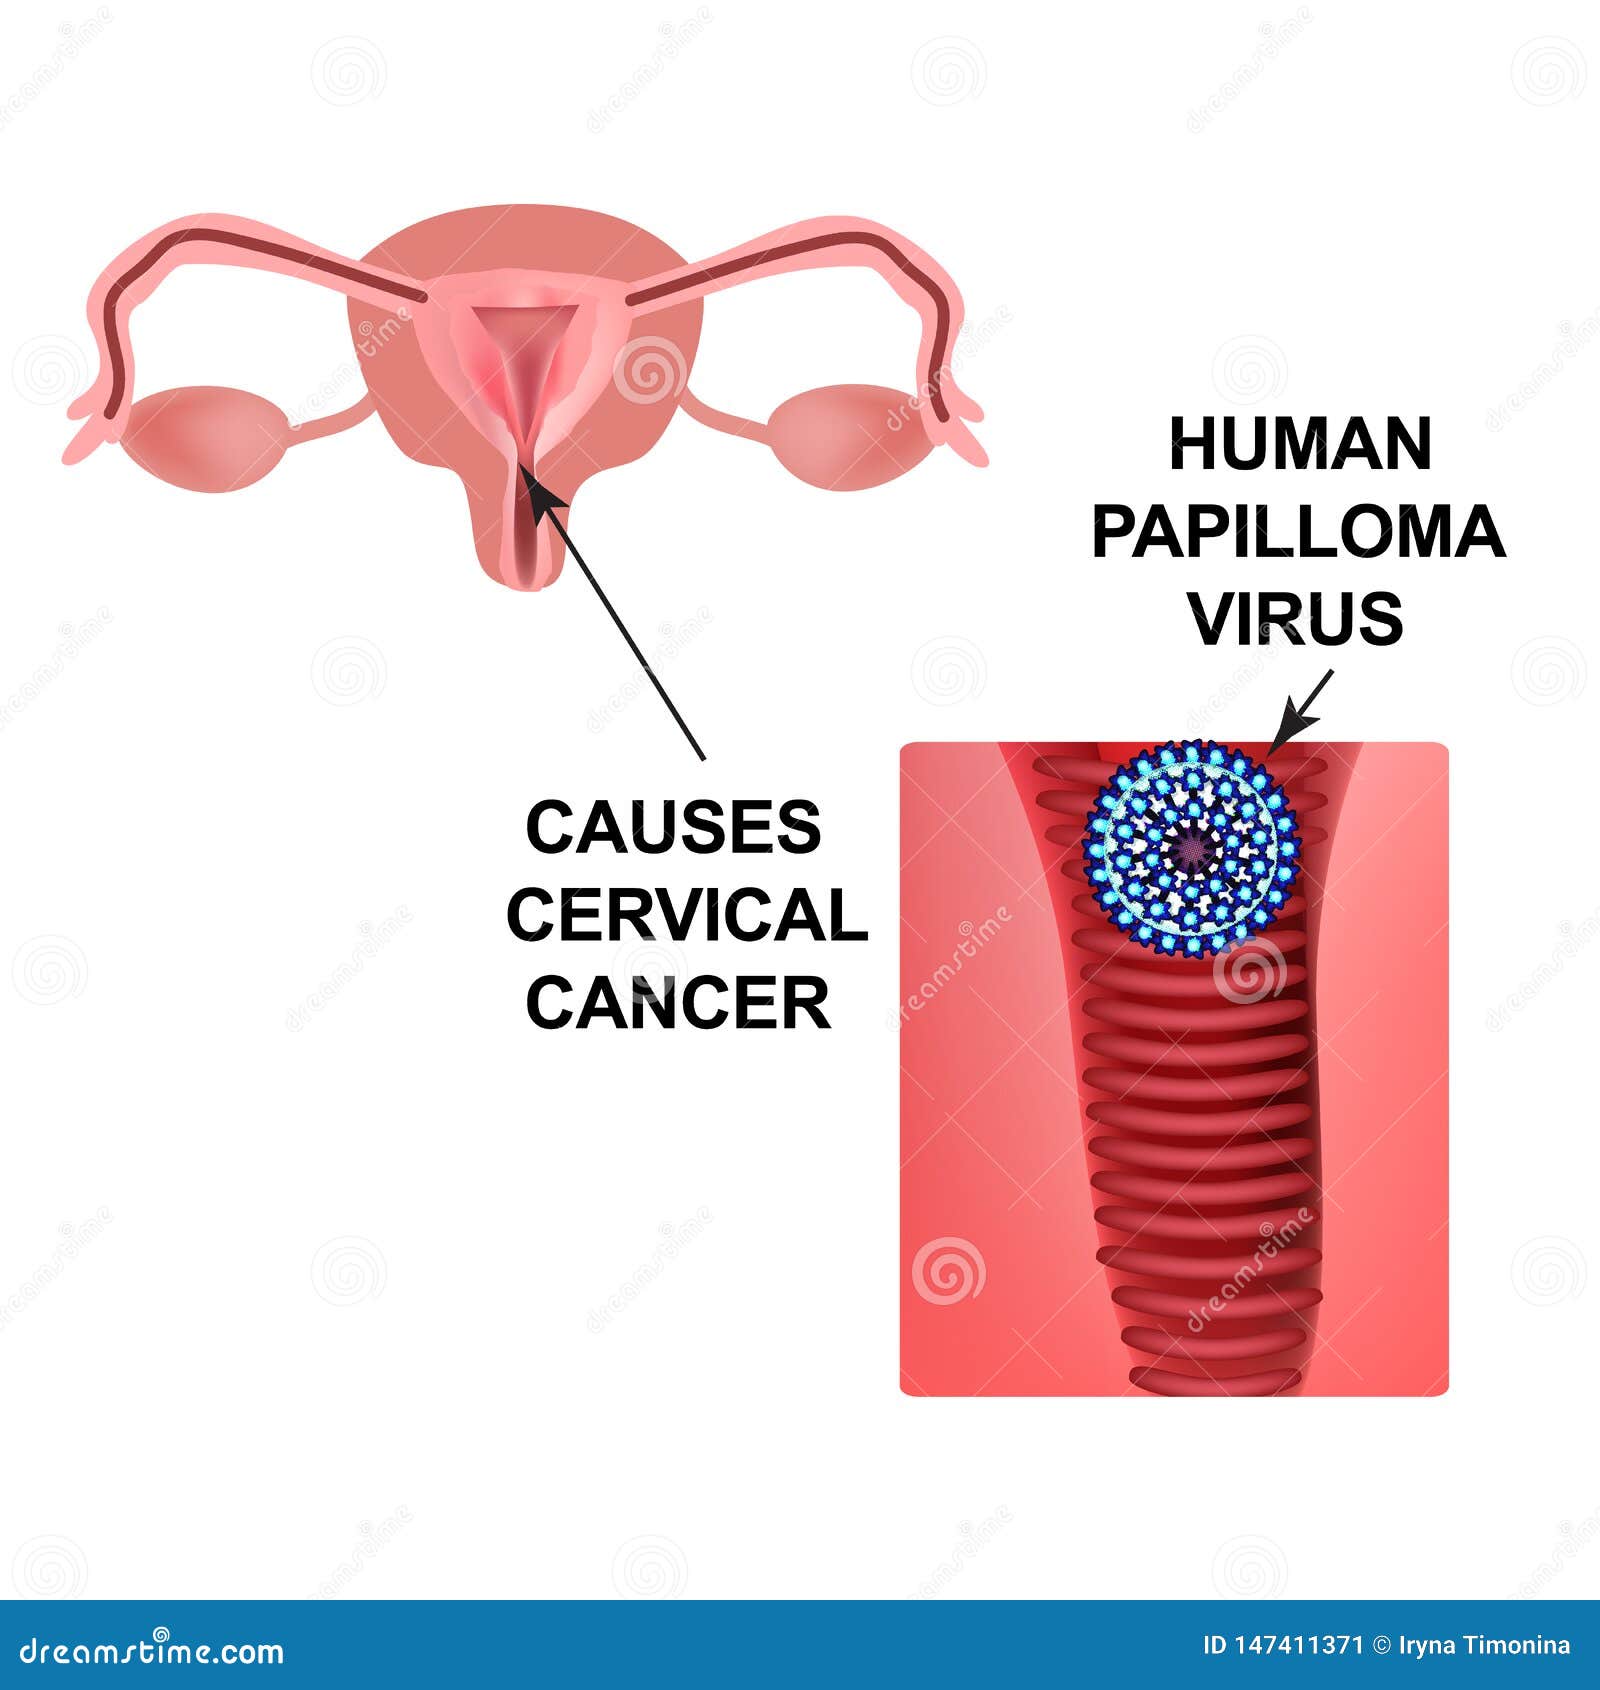 papillomas cause cancer